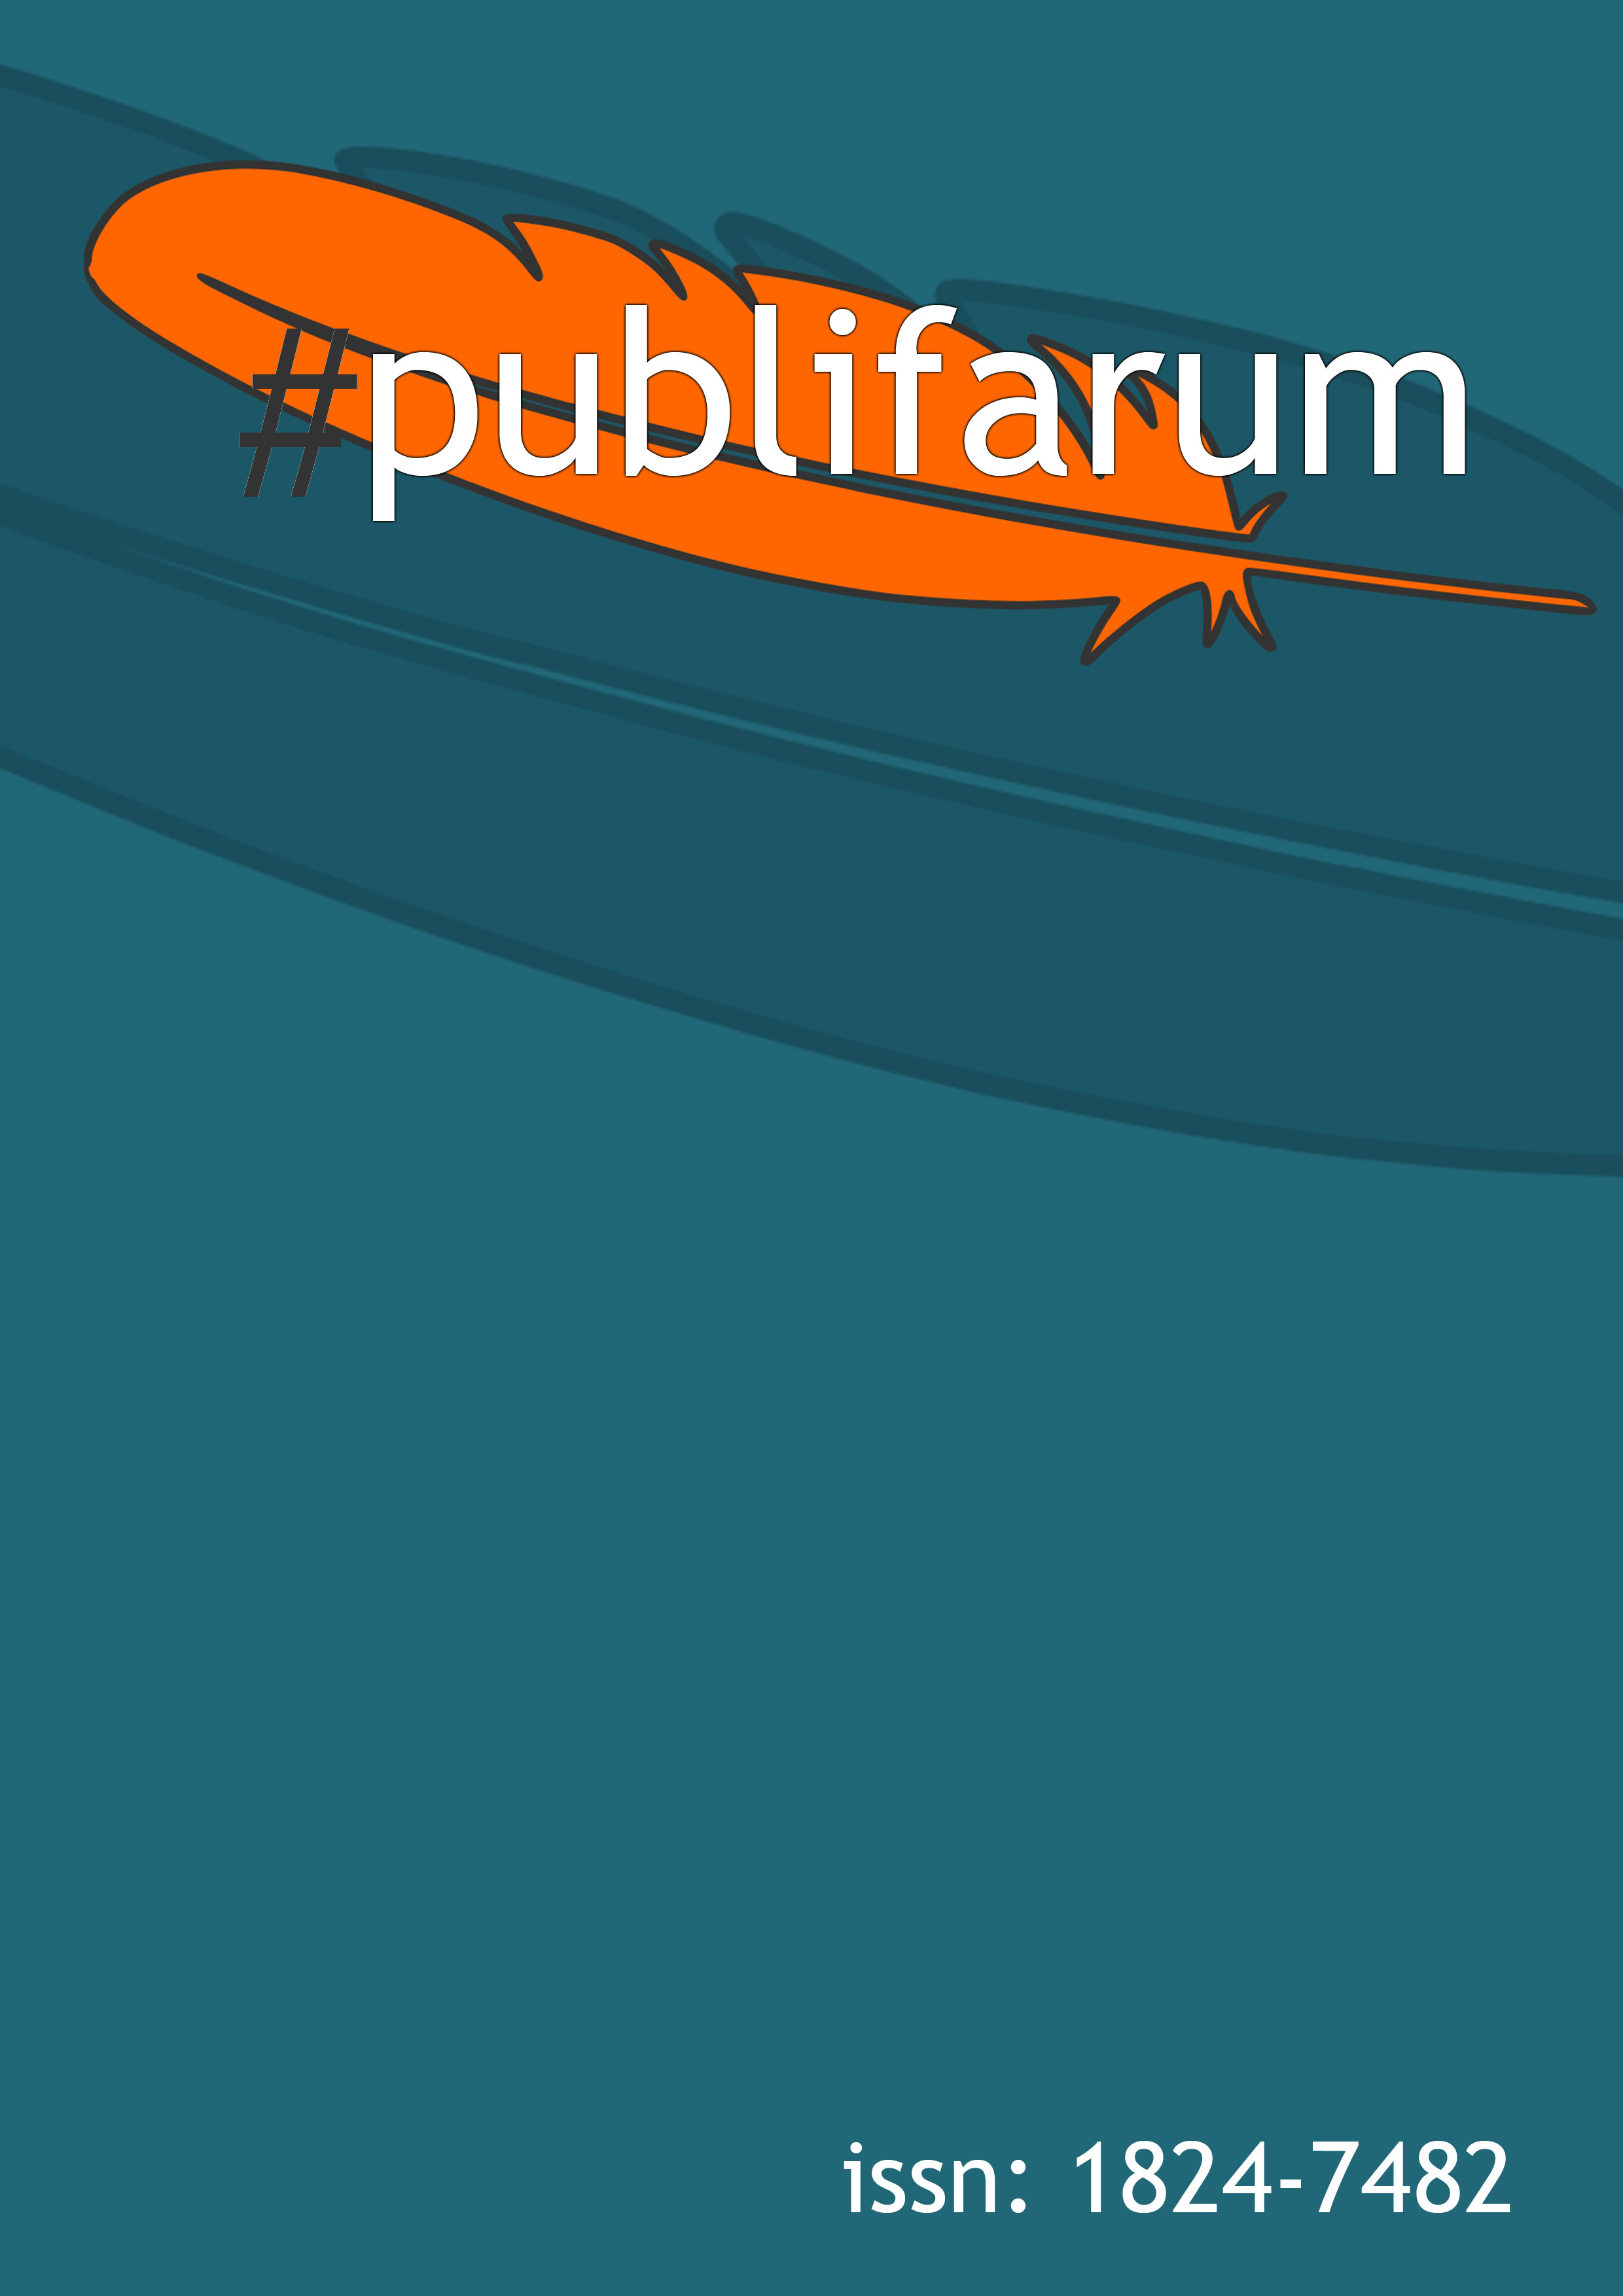 copertina rivista publifarum